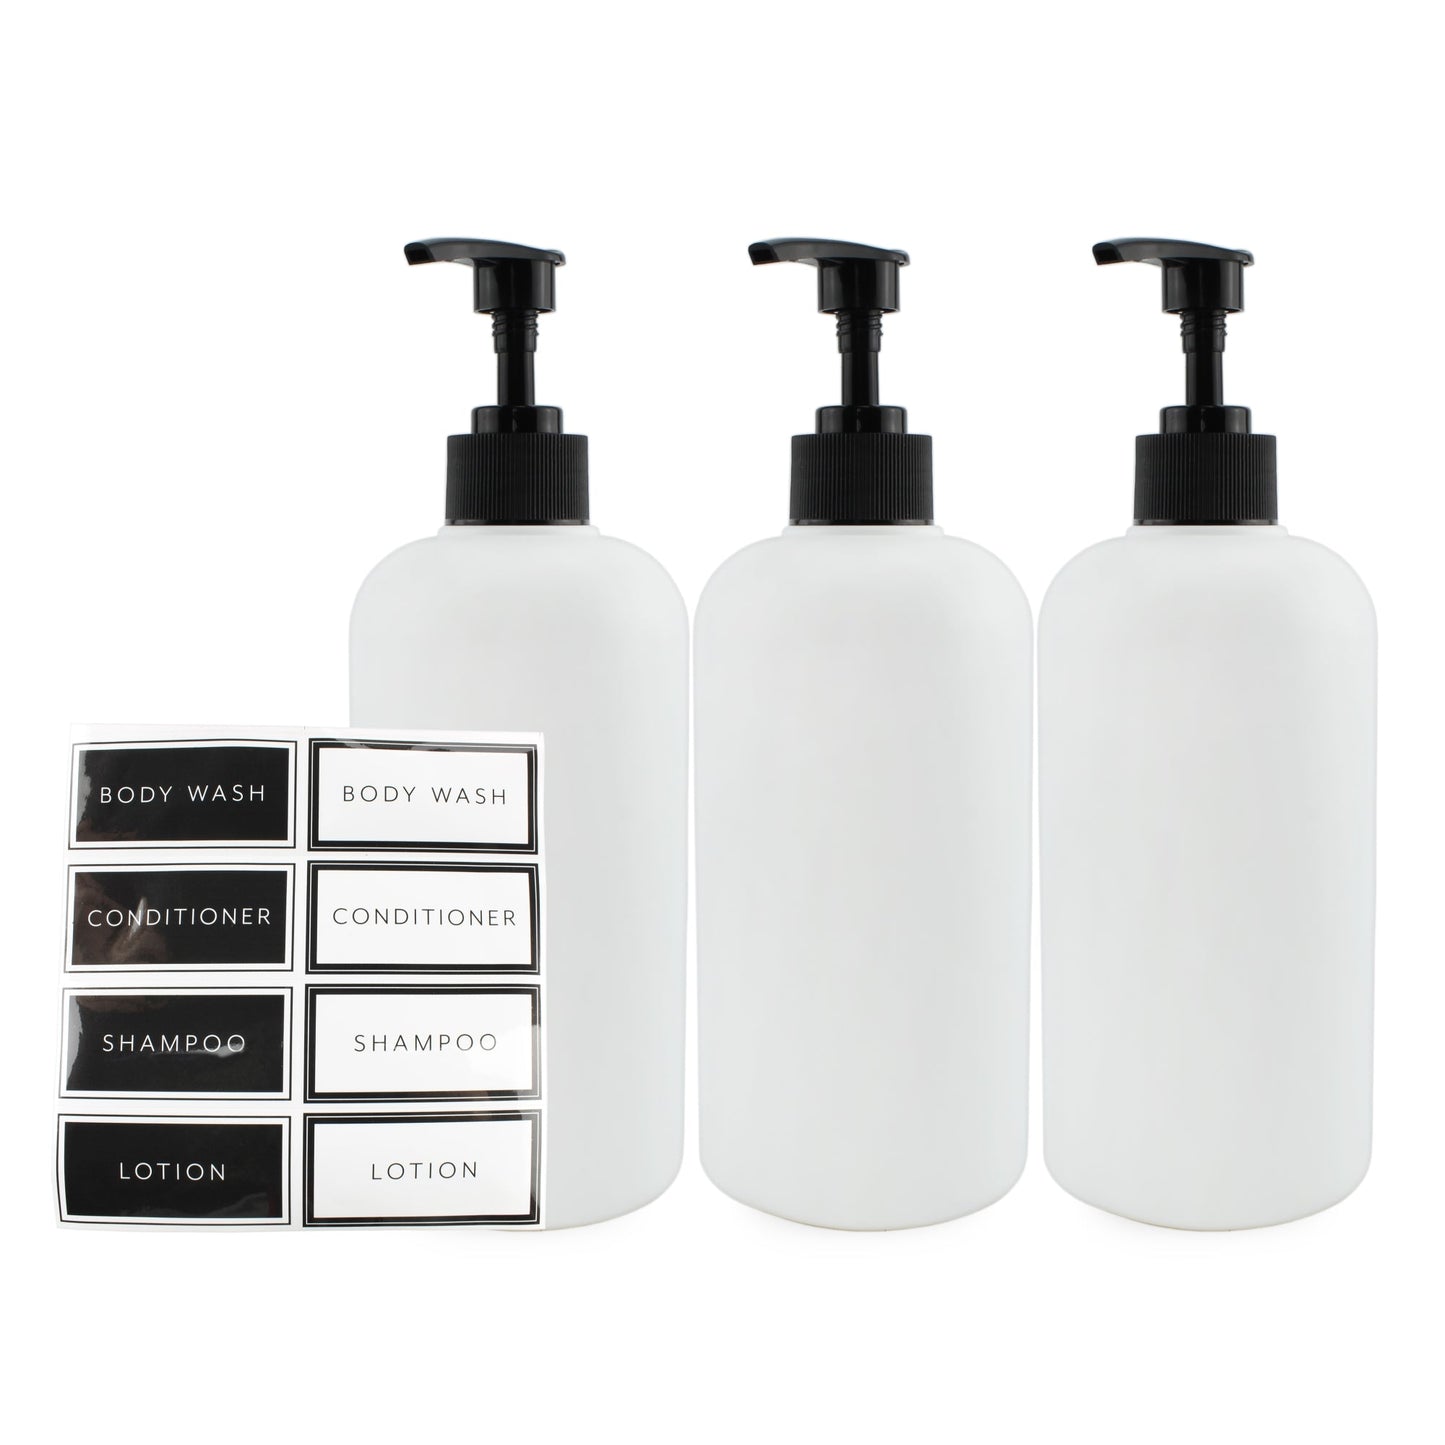 16oz Shower Pump Bottles, Set of 3 (Case of 24 Sets) - SH_2055_CASE